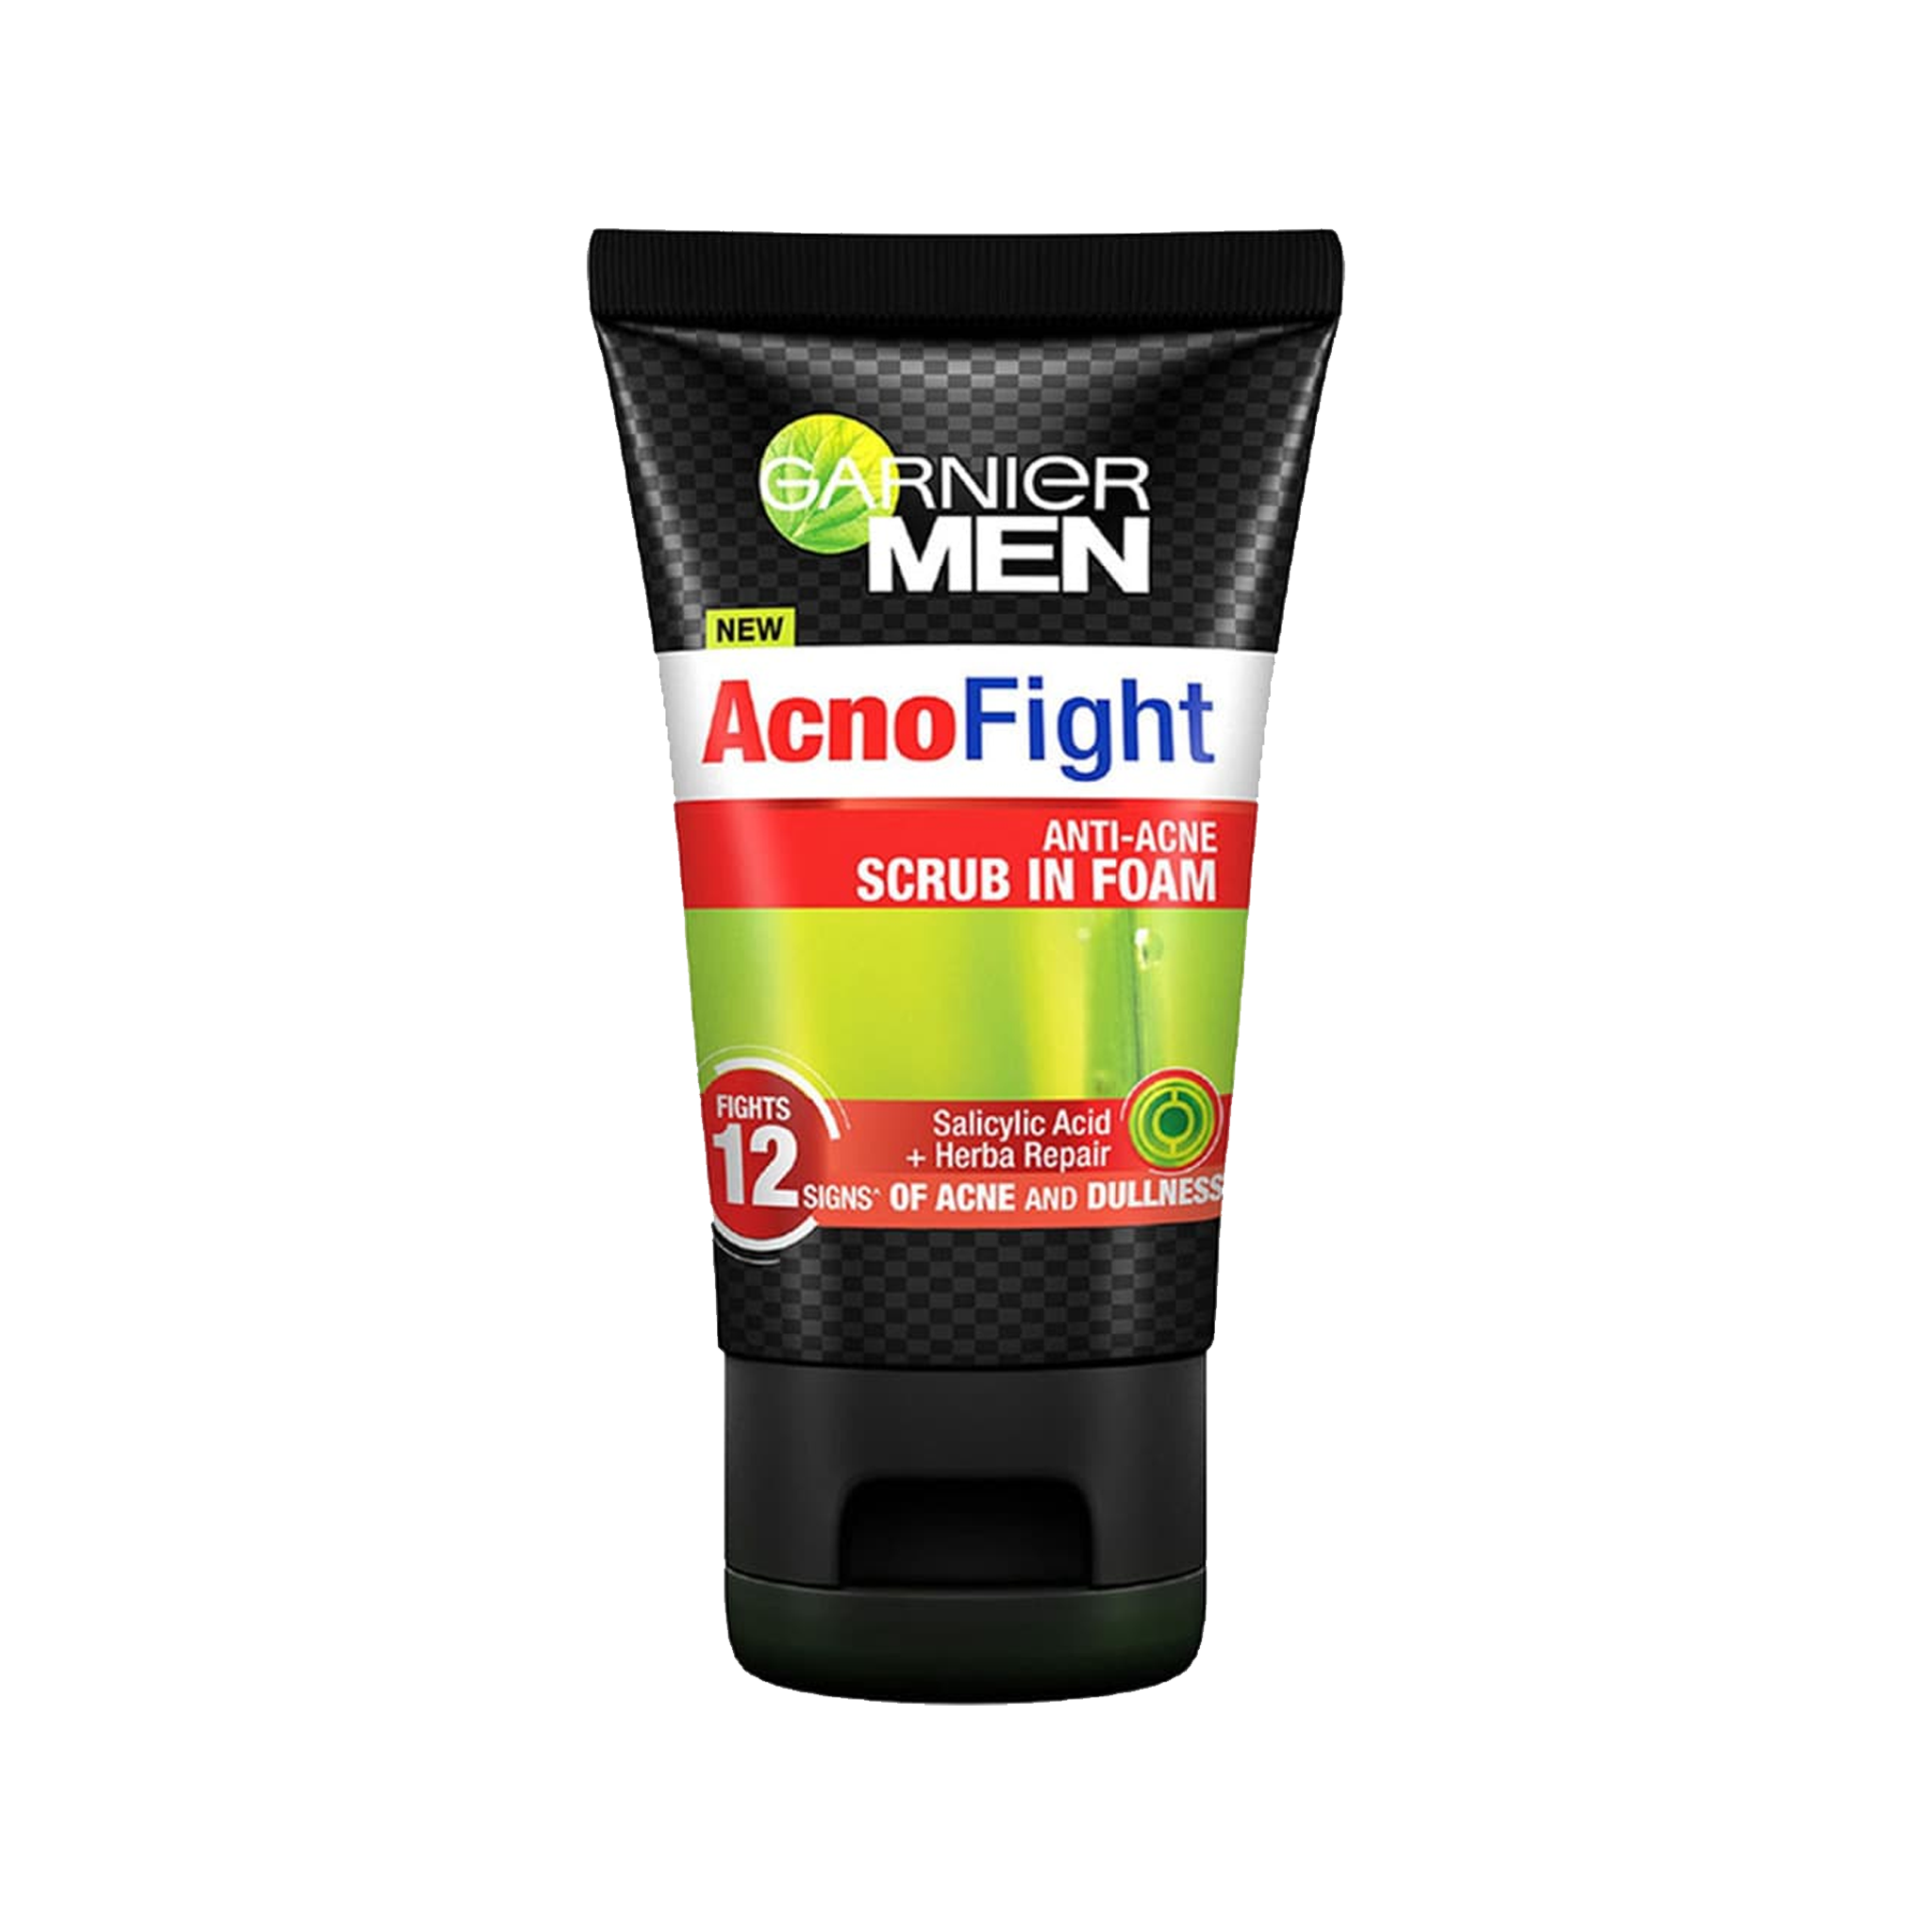 Garnier Men Acnofight Anti acne srub in foam face wash 100ml